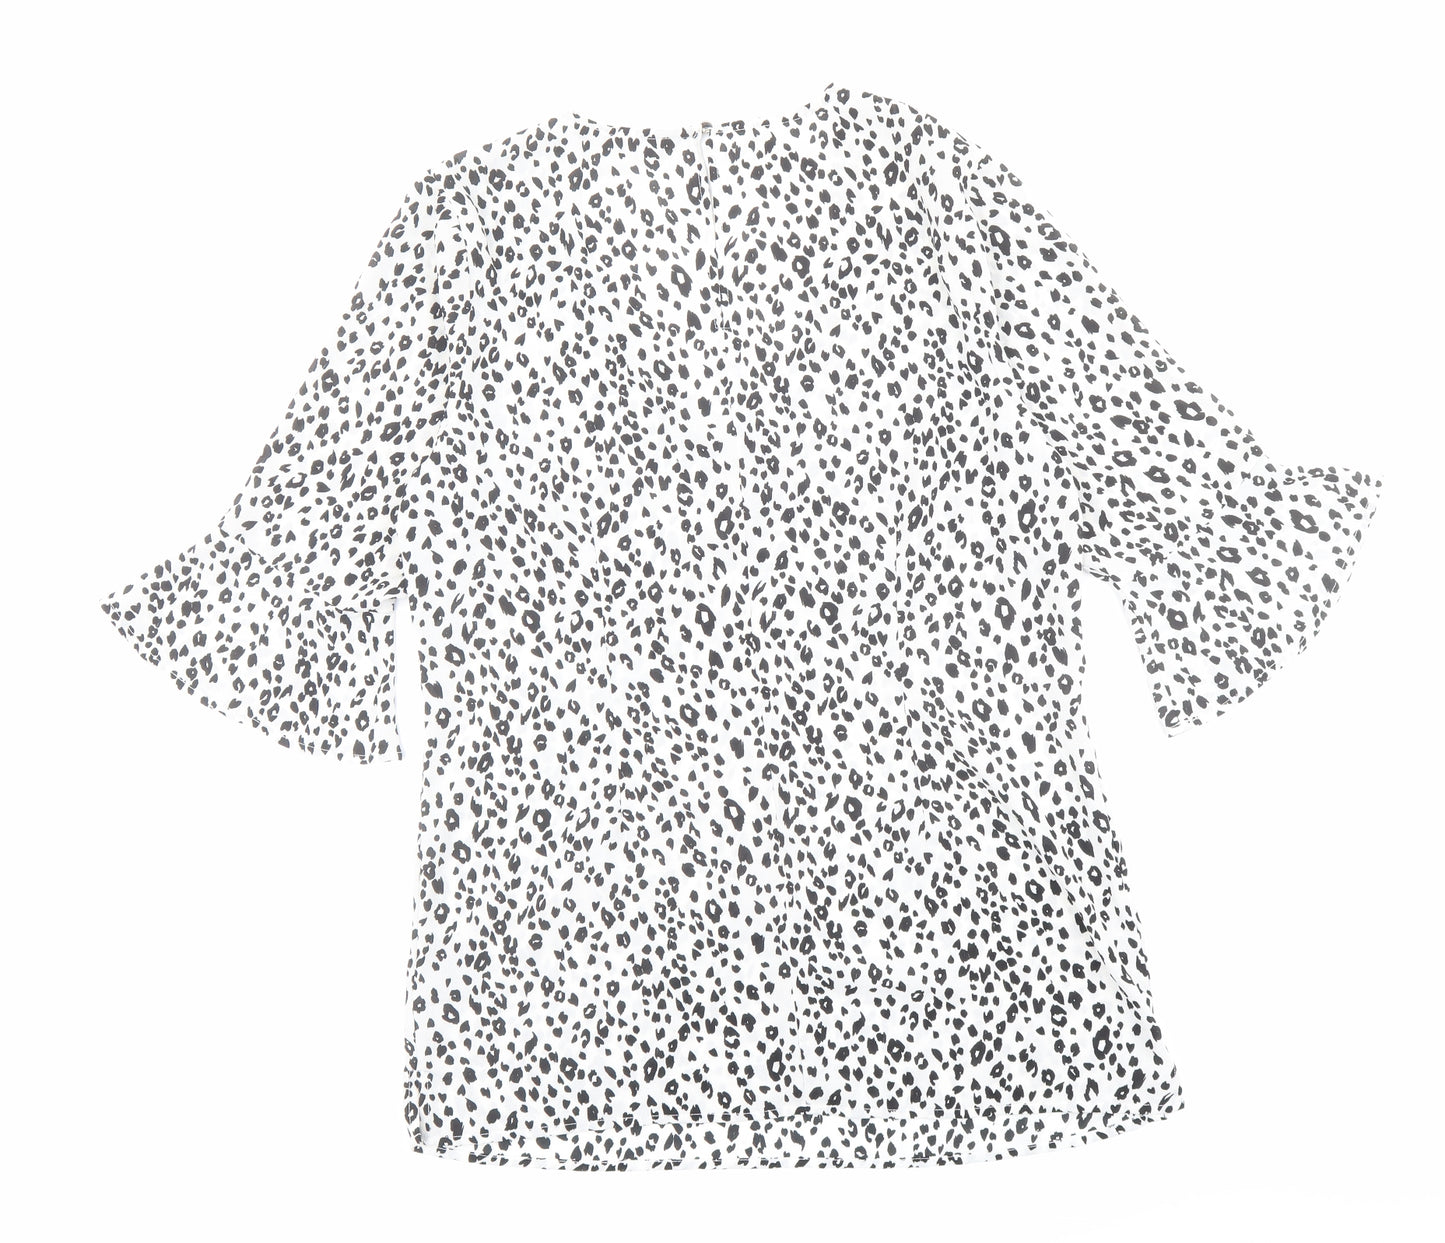 Sosandar Womens White Animal Print Polyester Basic Blouse Size 12 V-Neck - Leopard Print